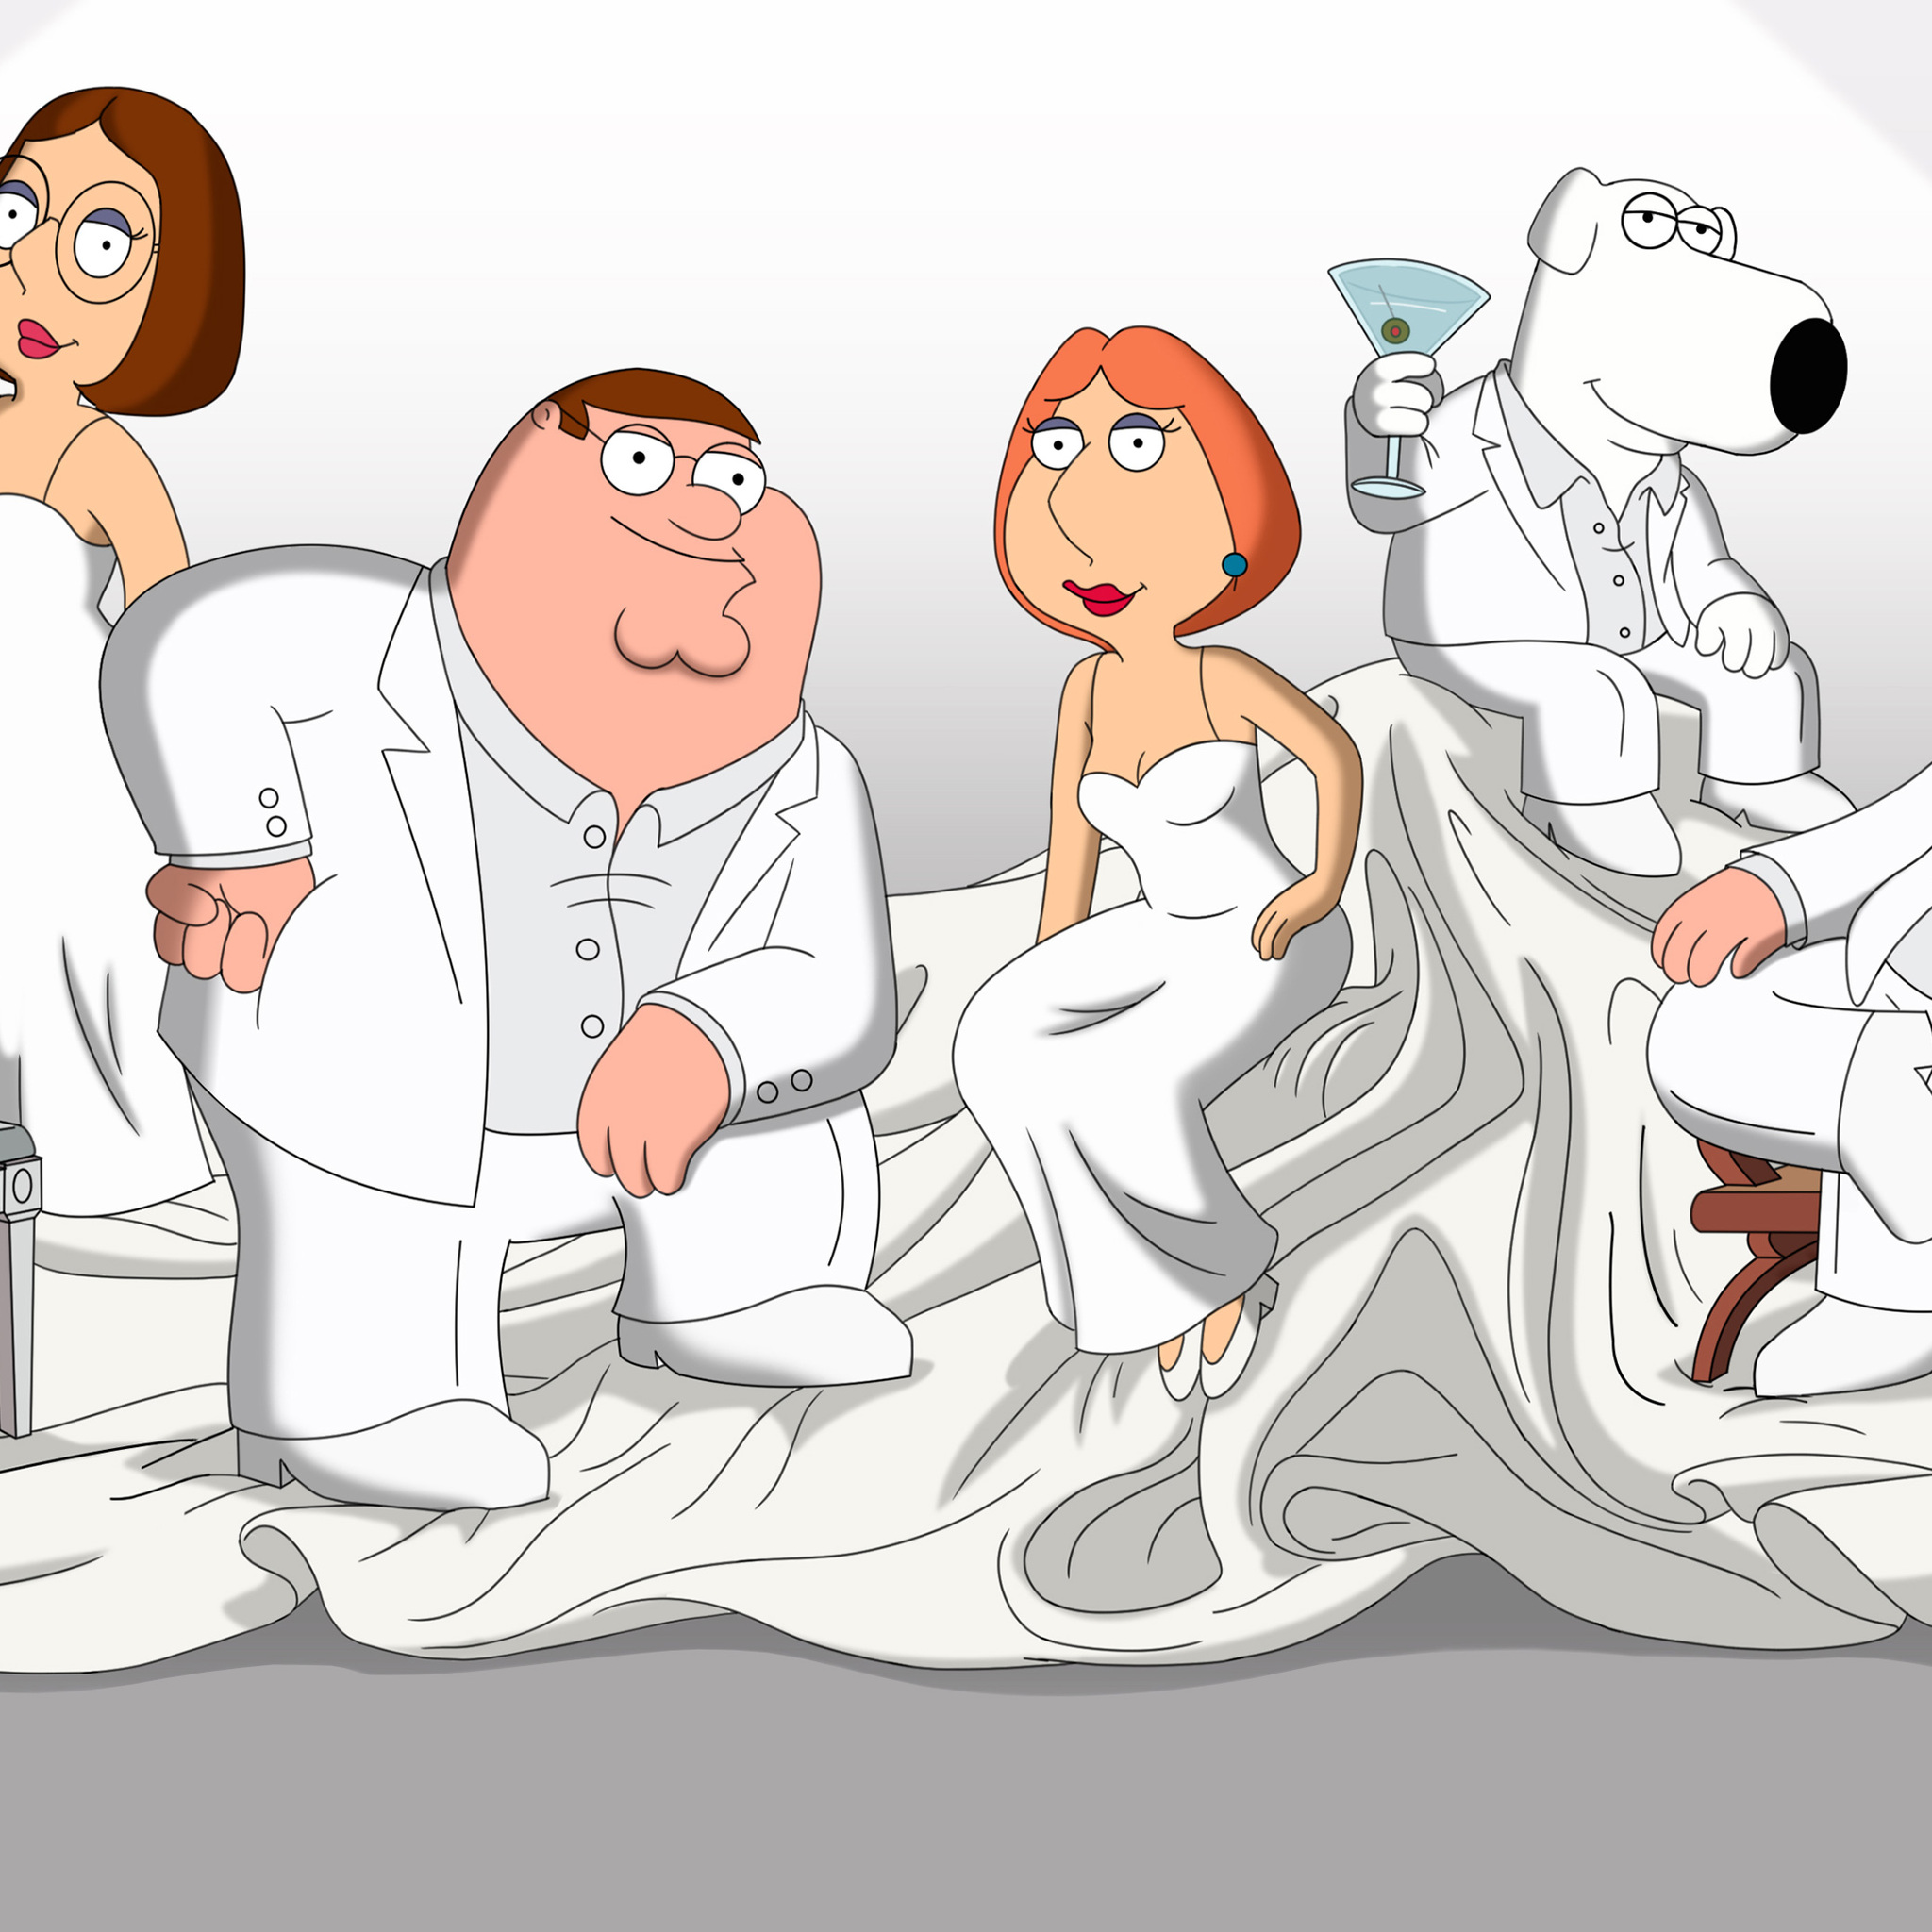 Family Guy In 2048x2048 Resolution. family-guy-ij.jpg. 